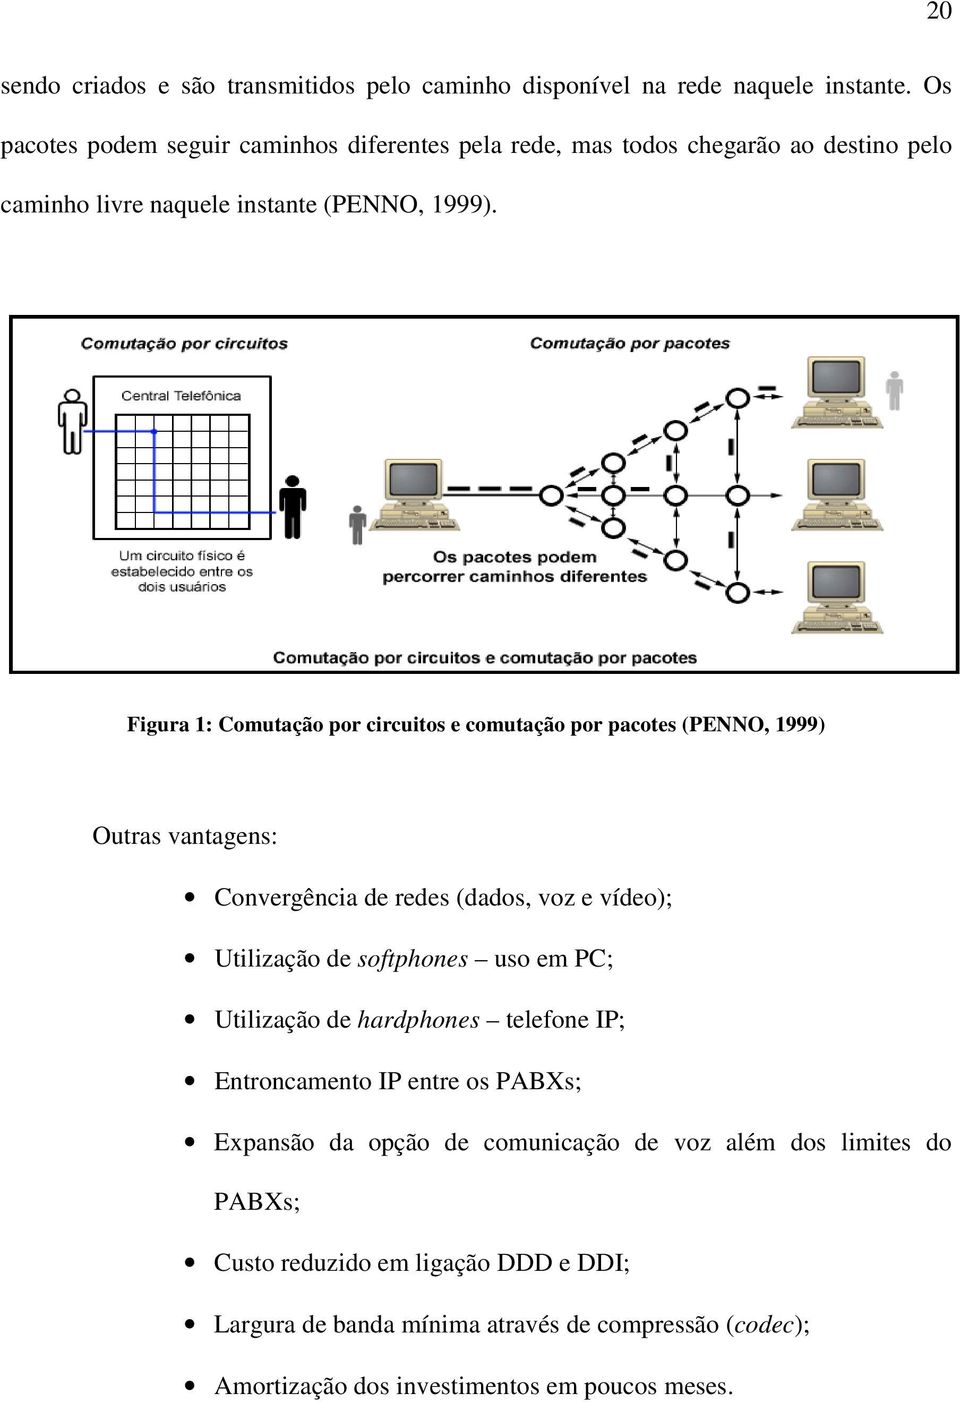 Figura 1: Comutação por circuitos e comutação por pacotes (PENNO, 1999) Outras vantagens: Convergência de redes (dados, voz e vídeo); Utilização de softphones uso em